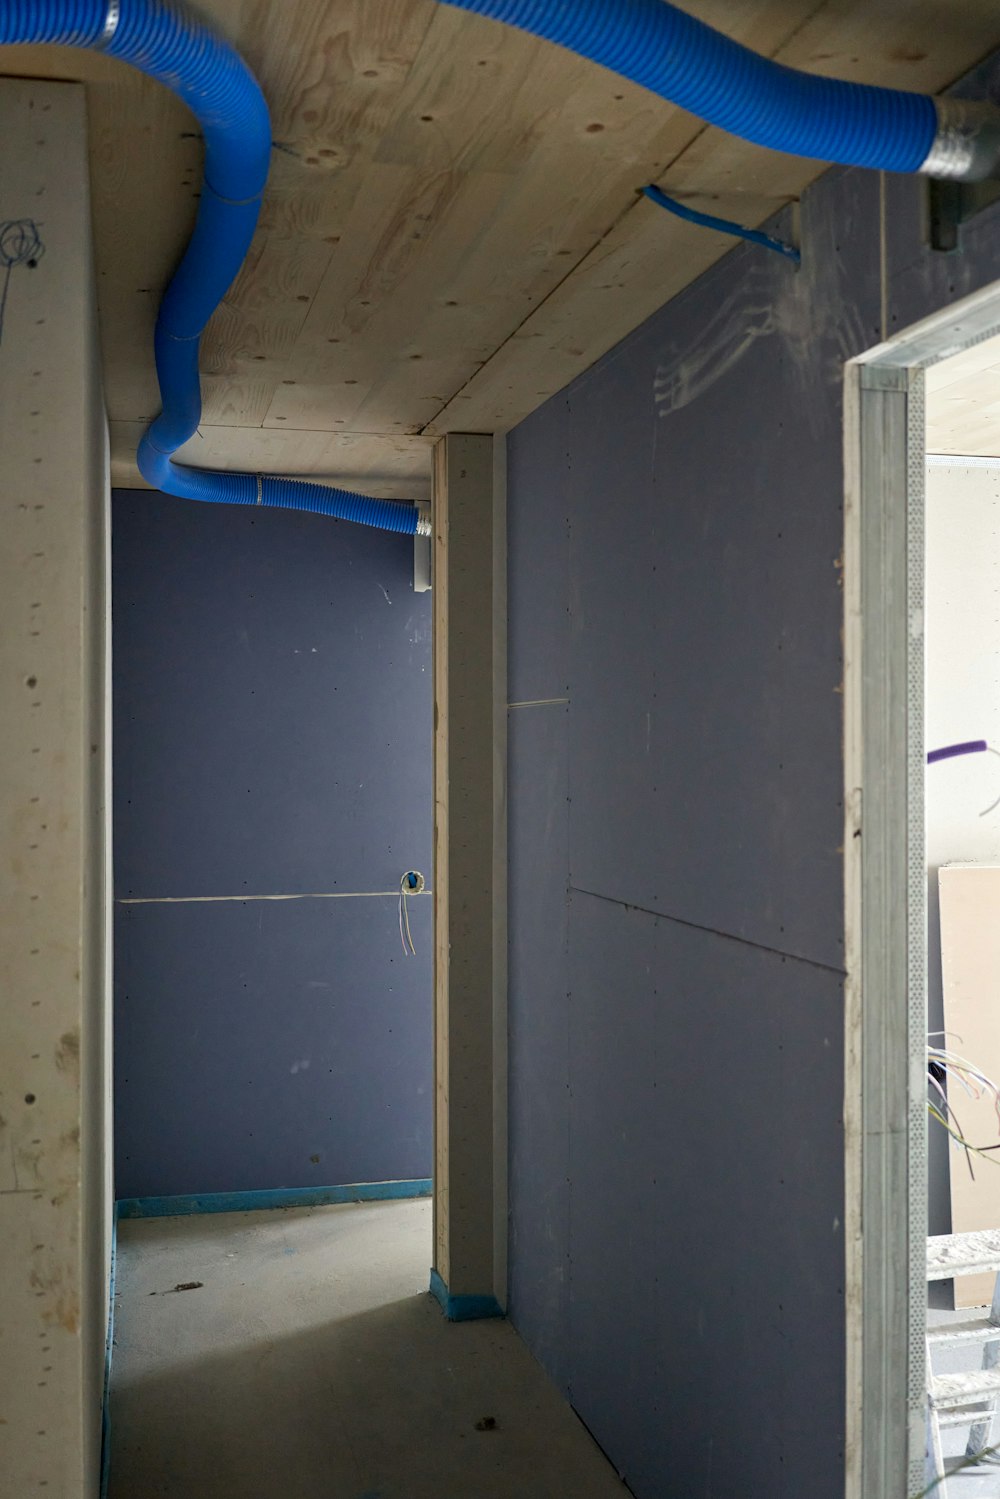 Una stanza incompiuta con un tubo blu che corre lungo il muro